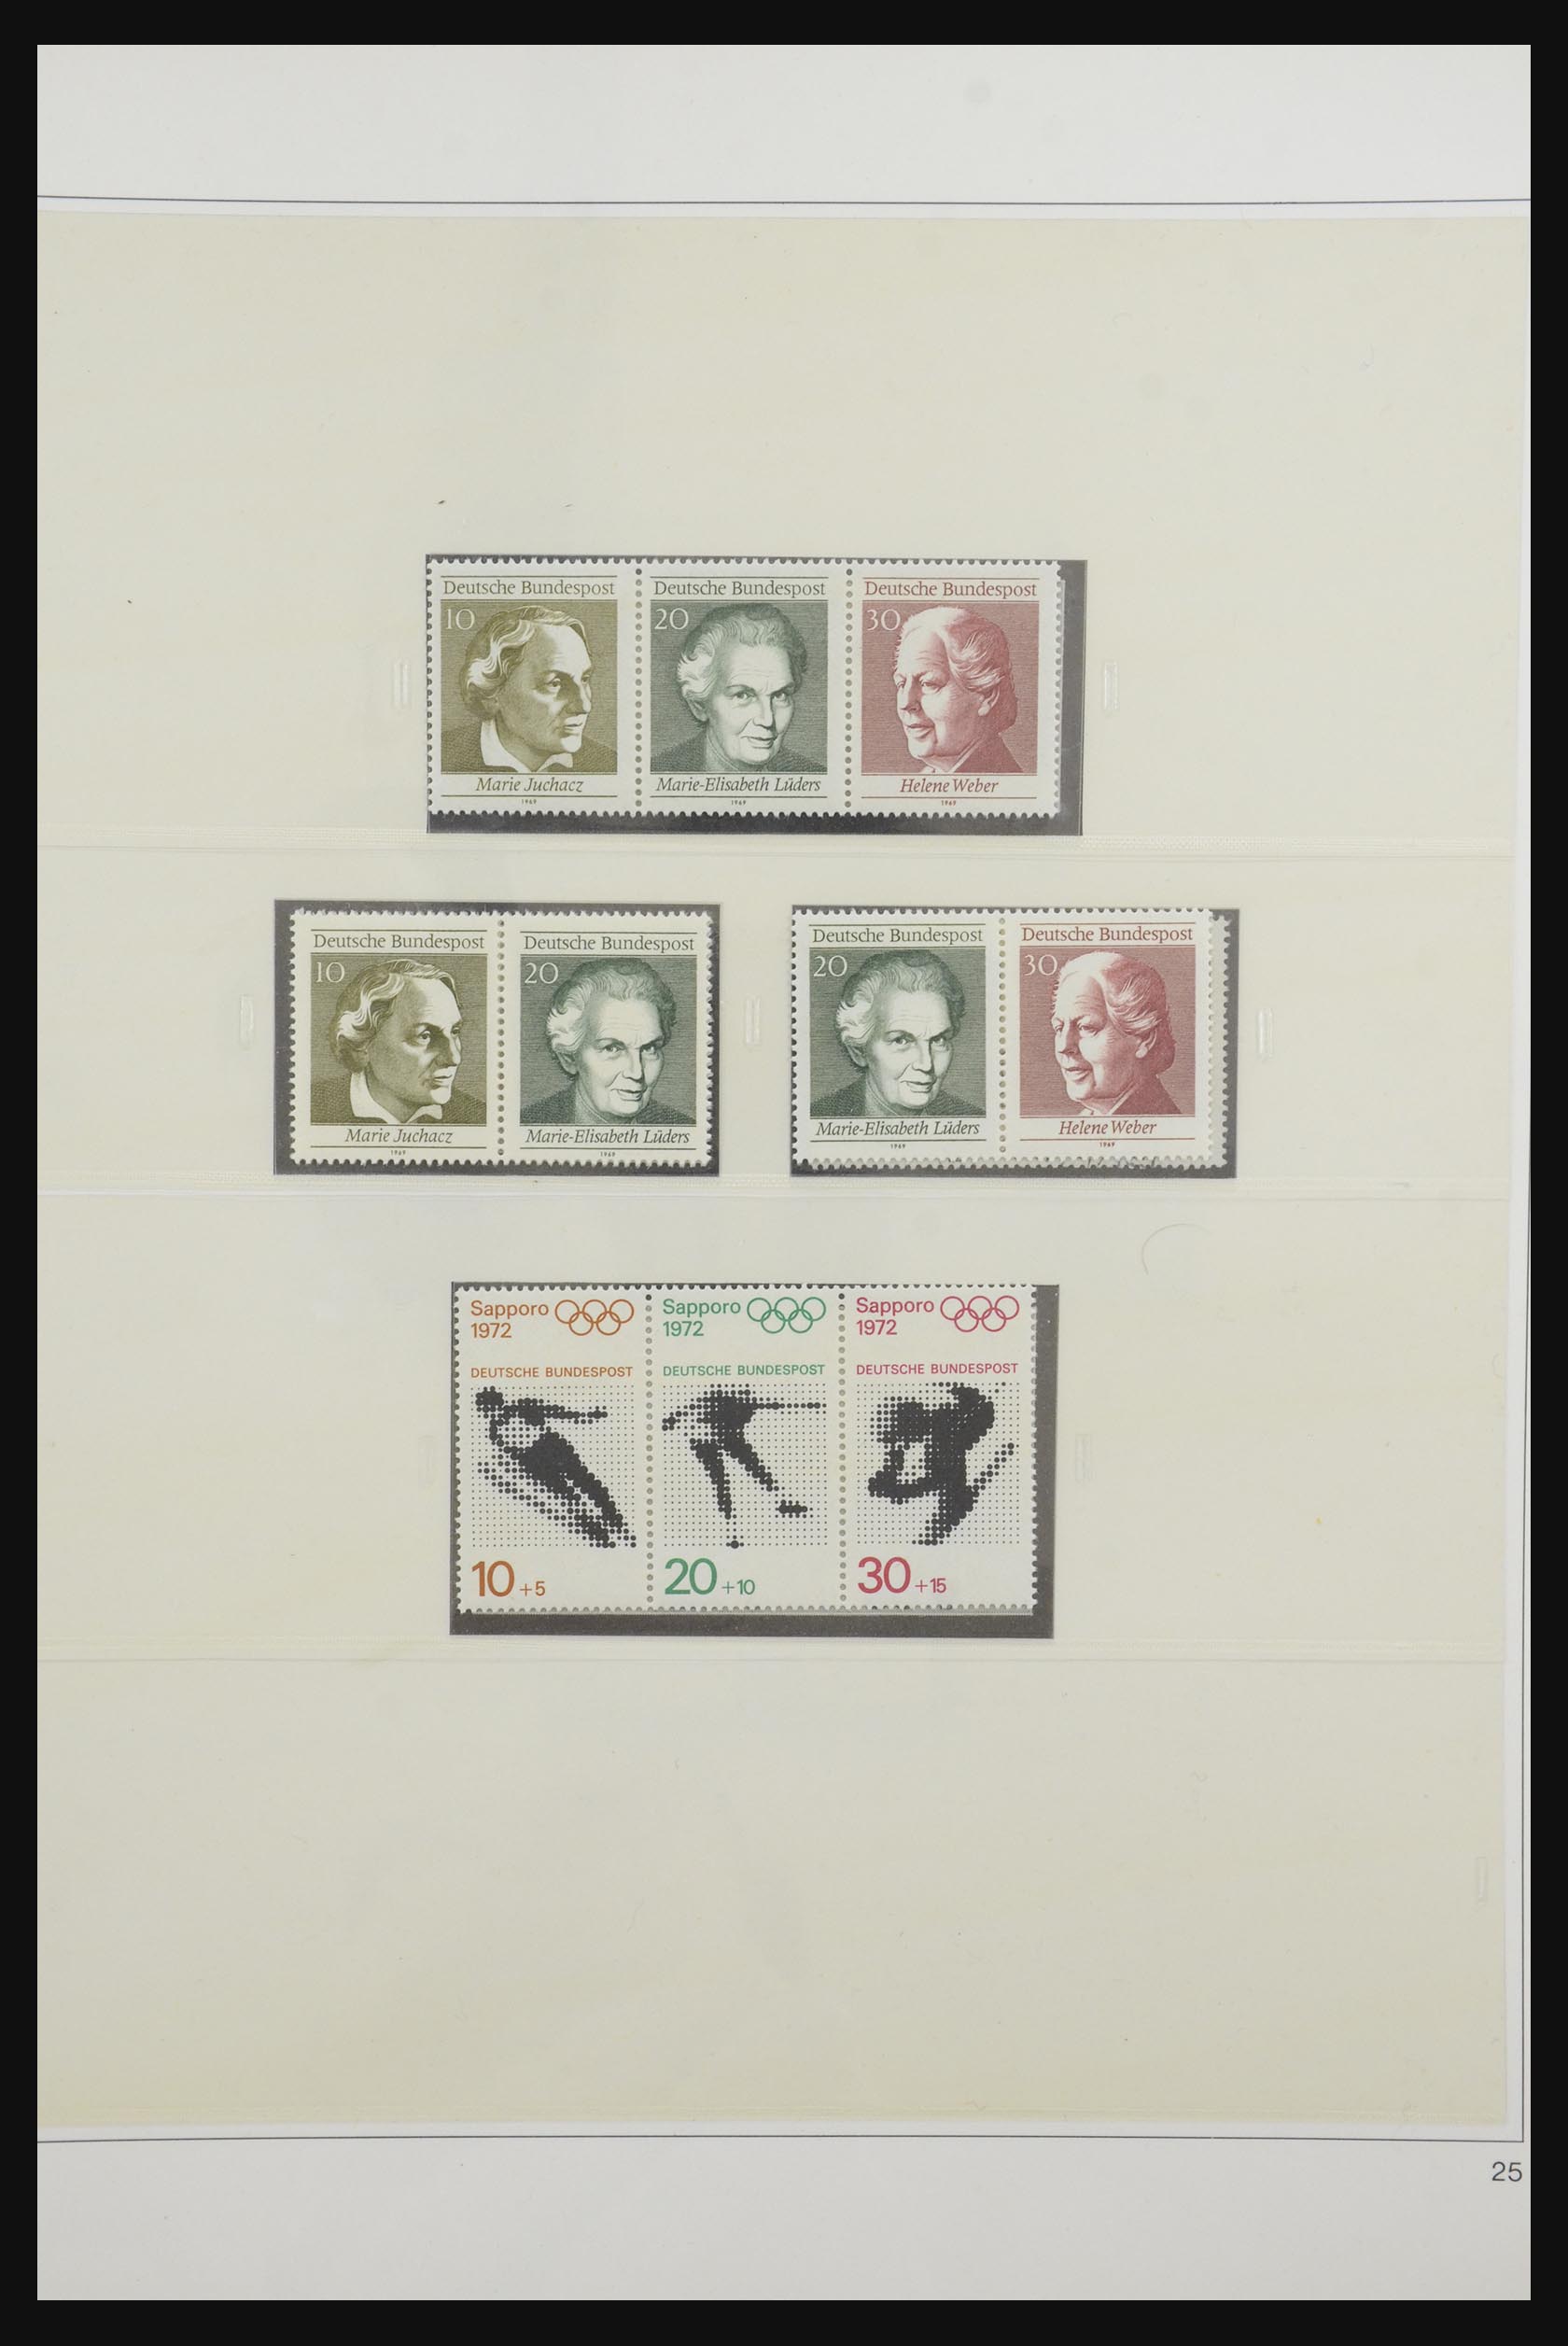 31842 034 - 31842 Bundespost combinations 1951-2003.